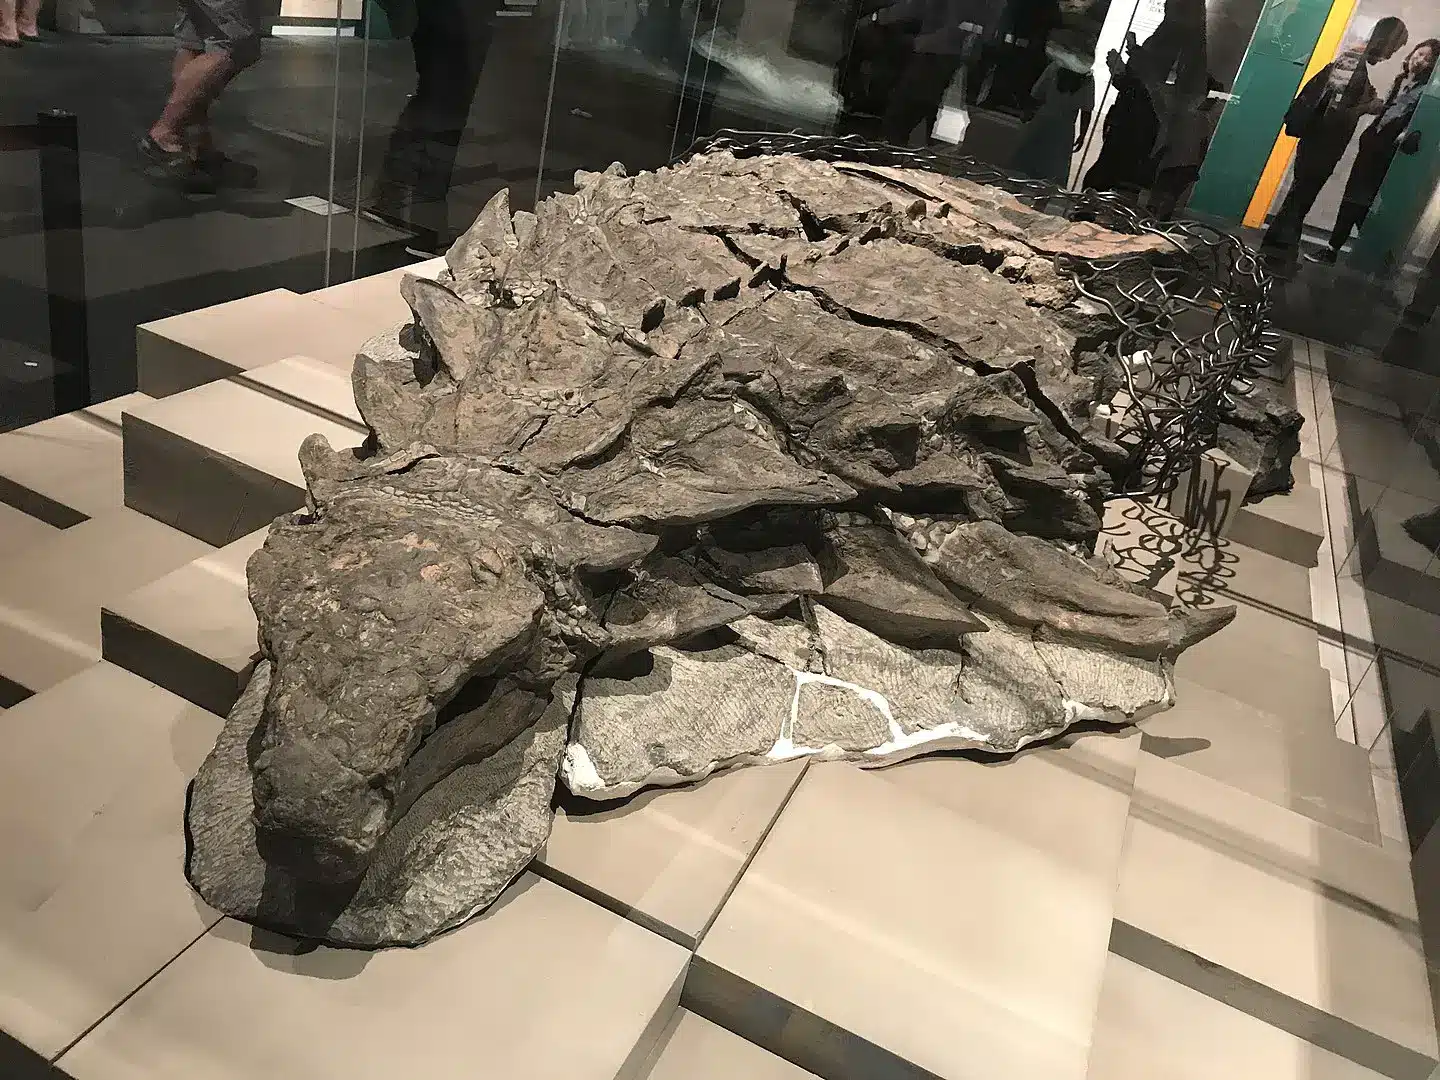 Un fósil muy bien conservado de un Nodosaurio de hace 110 millones de años, descubierto accidentalmente en Canadá